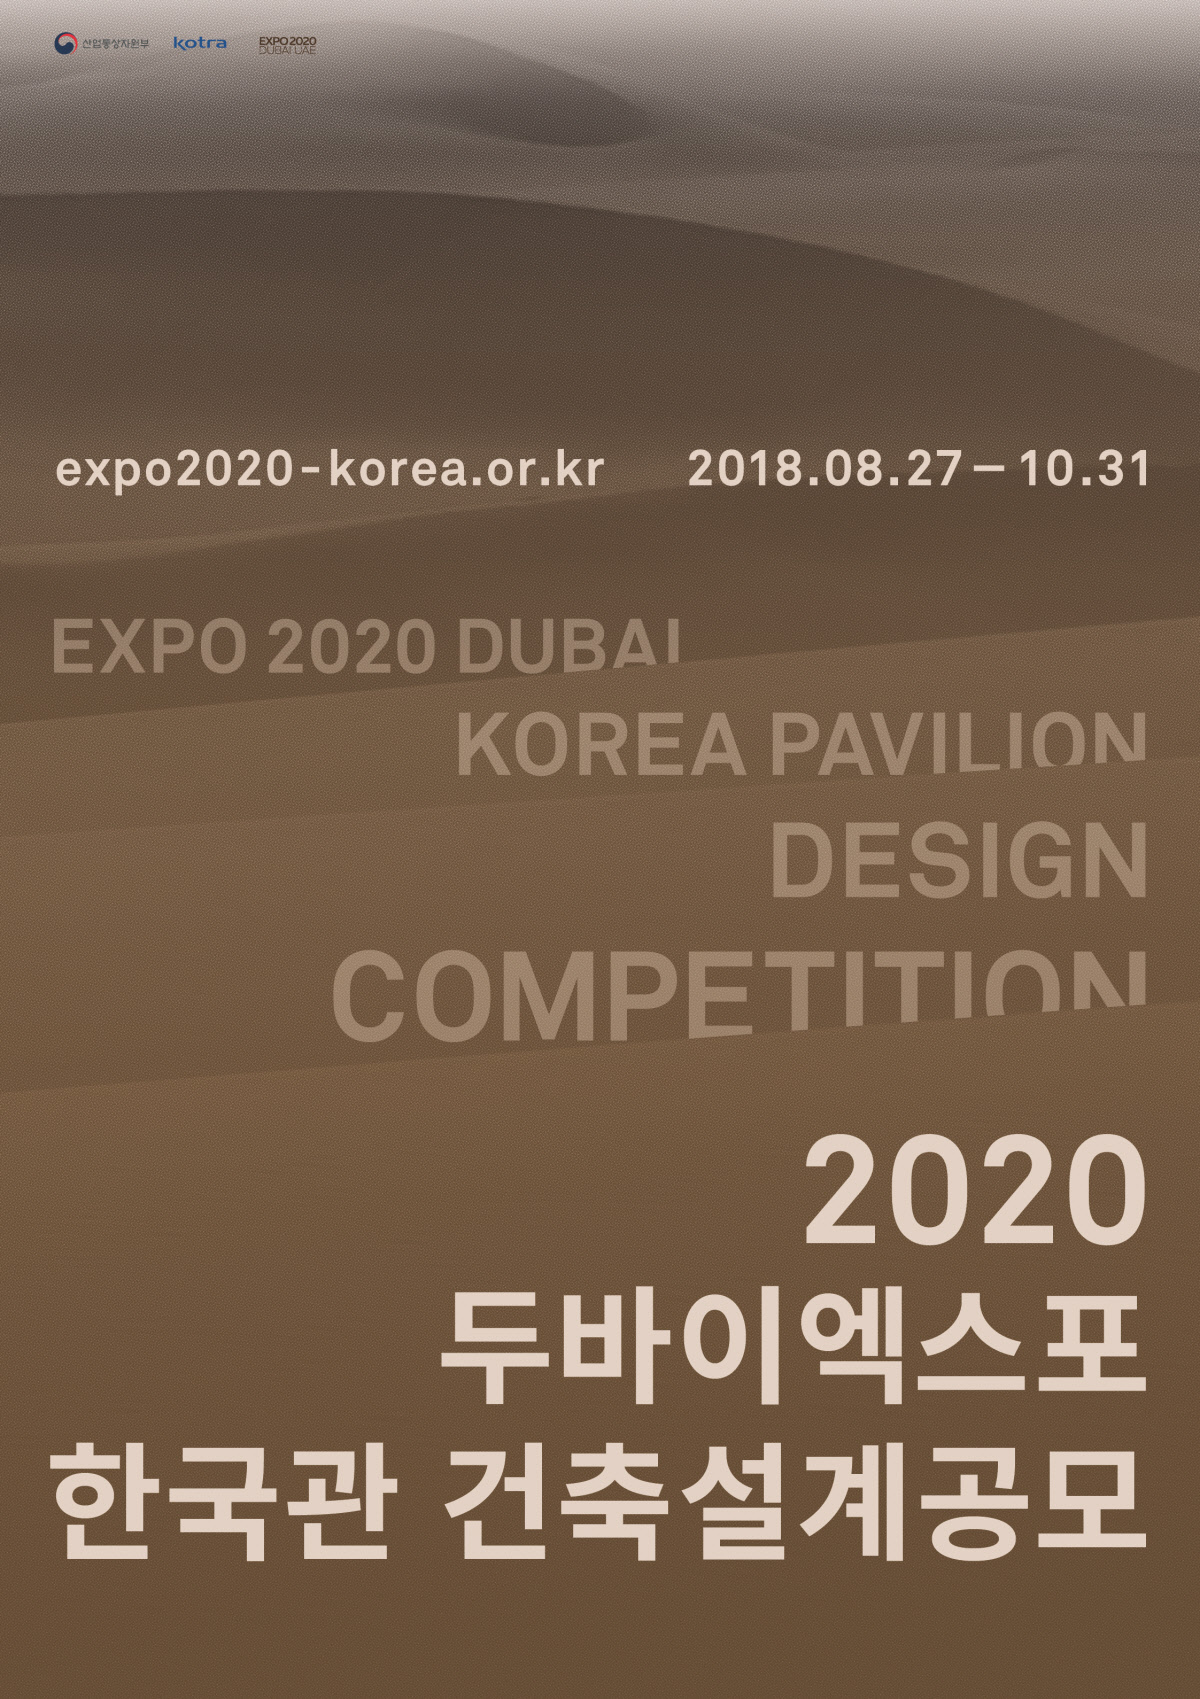 You are currently viewing 2020 두바이 엑스포 한국관 조성을 위한 건축설계 공모